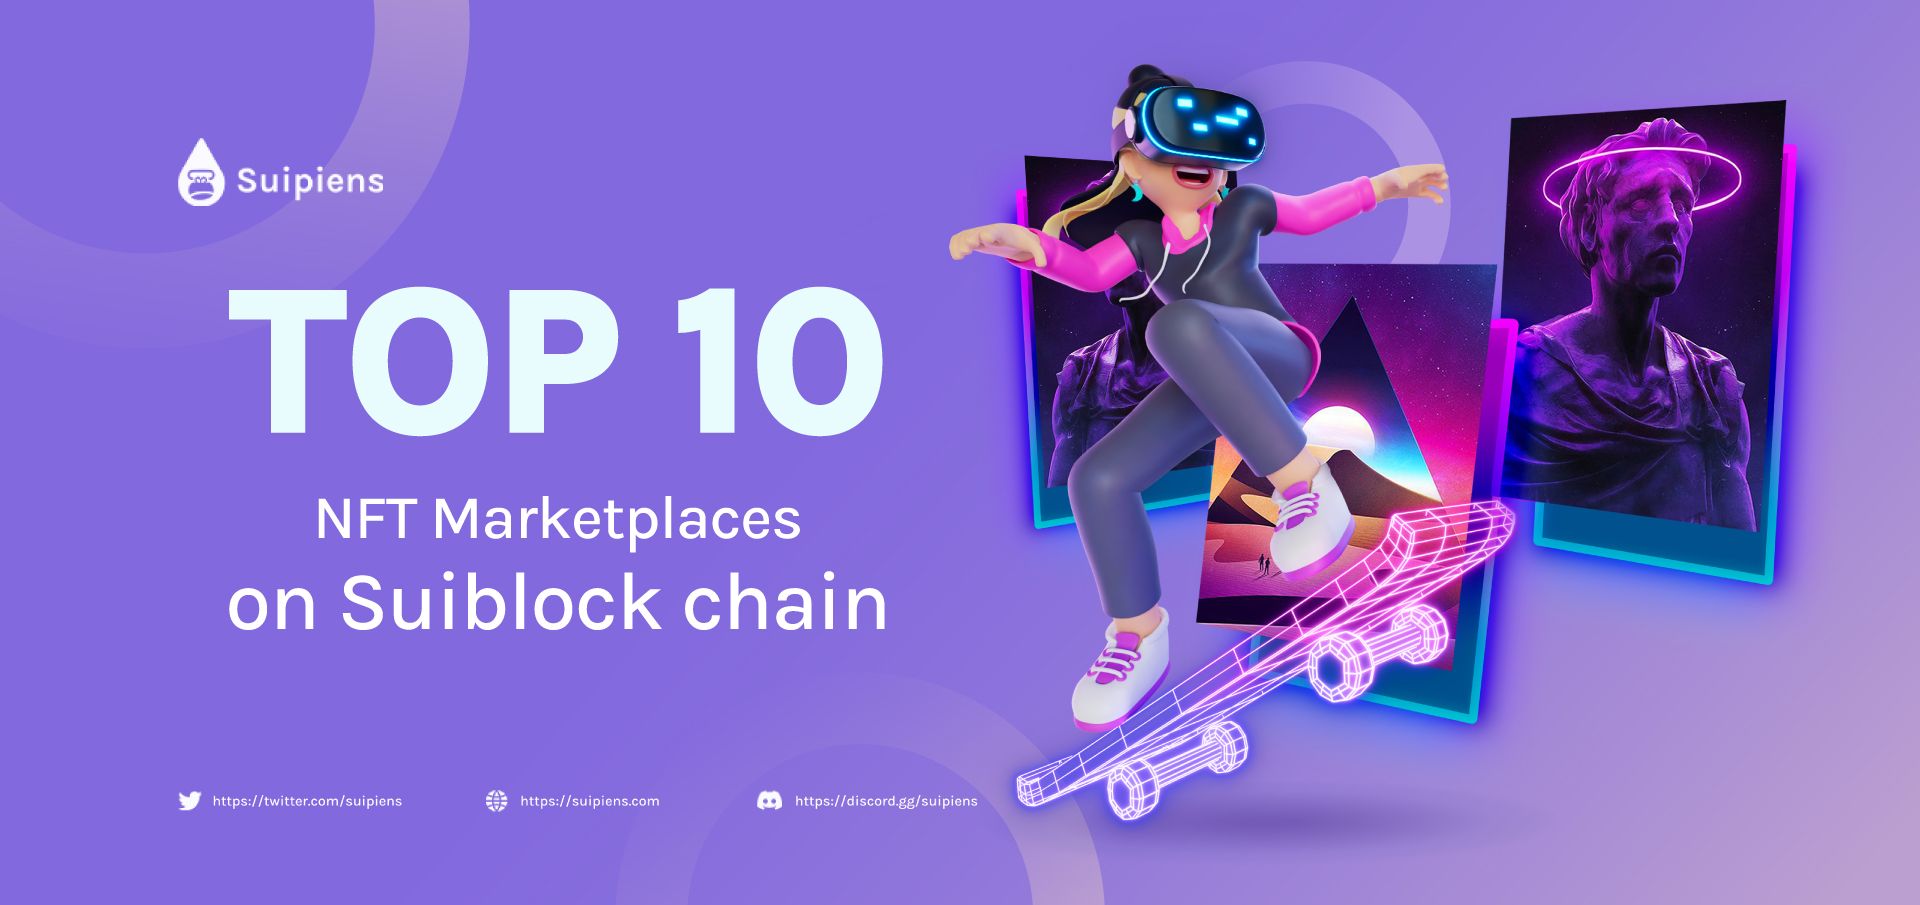 Top 10 NFT Marketplaces On Sui Blockchain